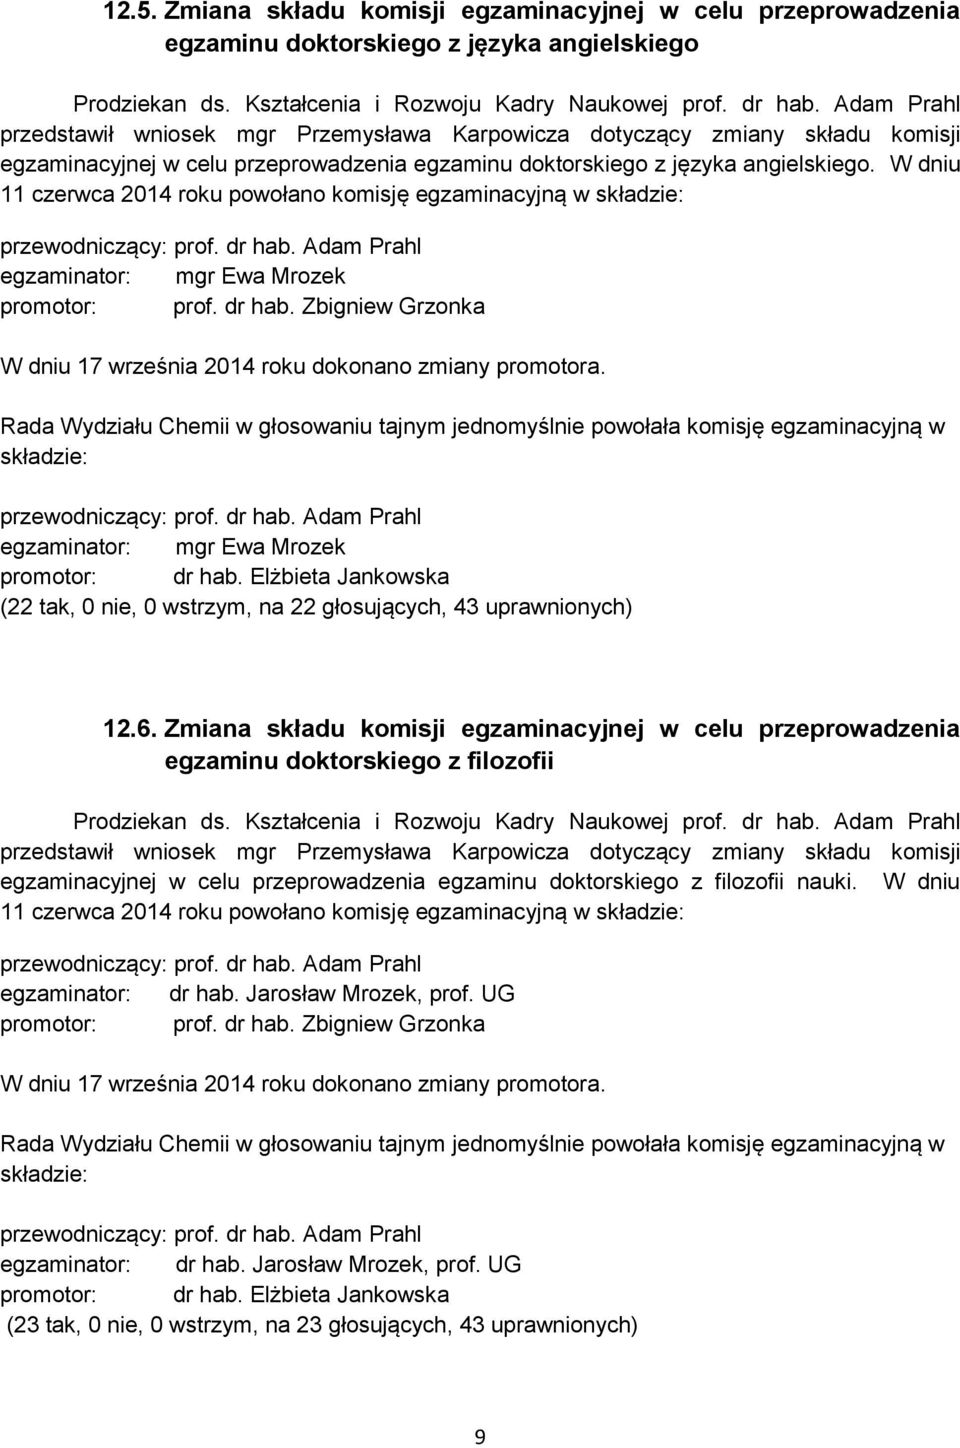 W dniu 11 czerwca 2014 roku powołano komisję egzaminacyjną w składzie: przewodniczący: egzaminator: mgr Ewa Mrozek promotor: prof. dr hab.